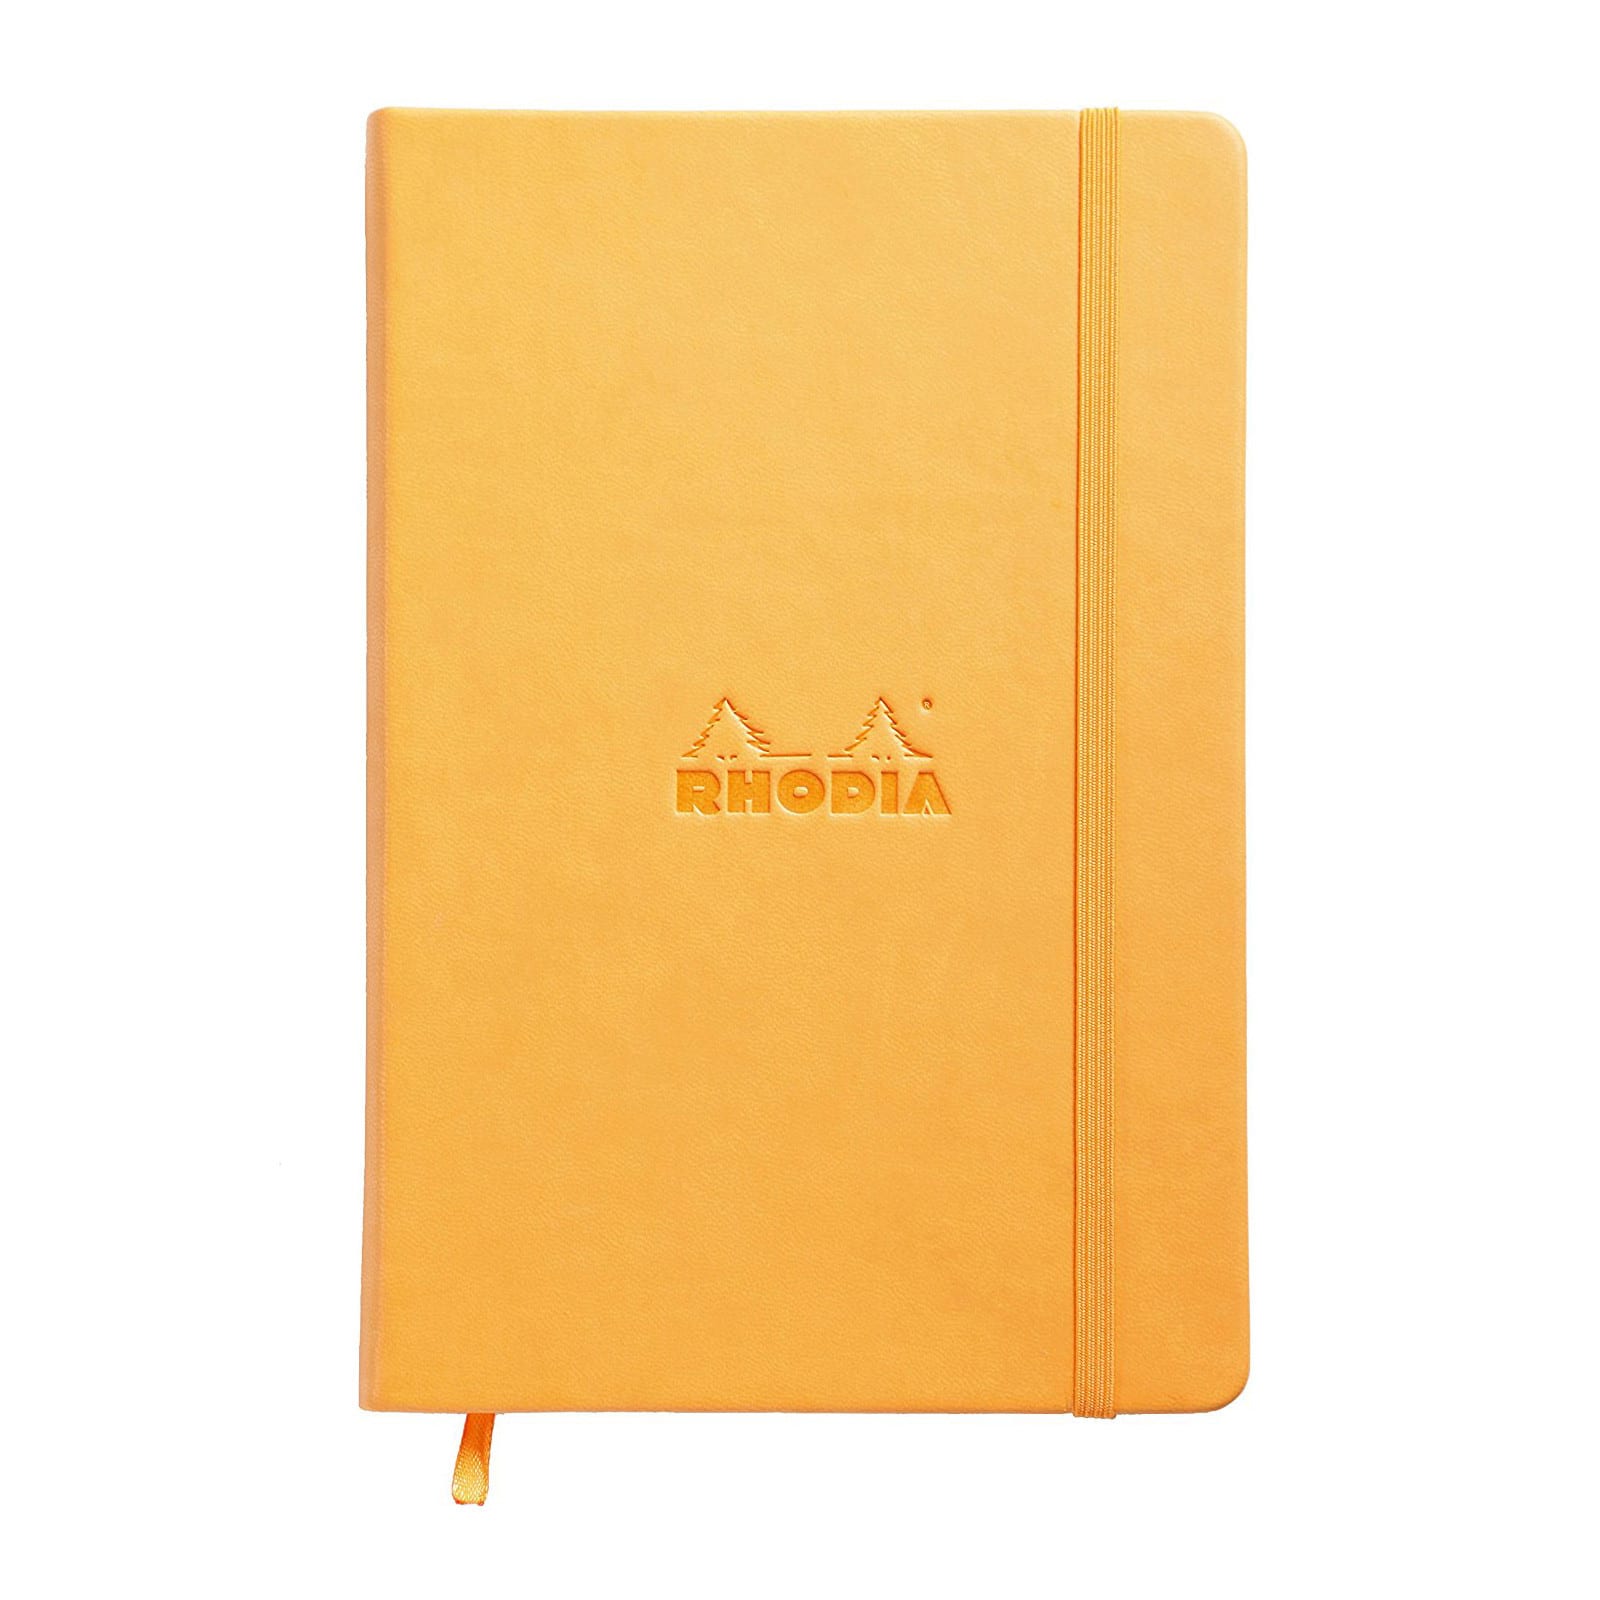 Rhodia&#xAE; Orange Dot Webnotebook, 5.5&#x22; x 8.25&#x22; 